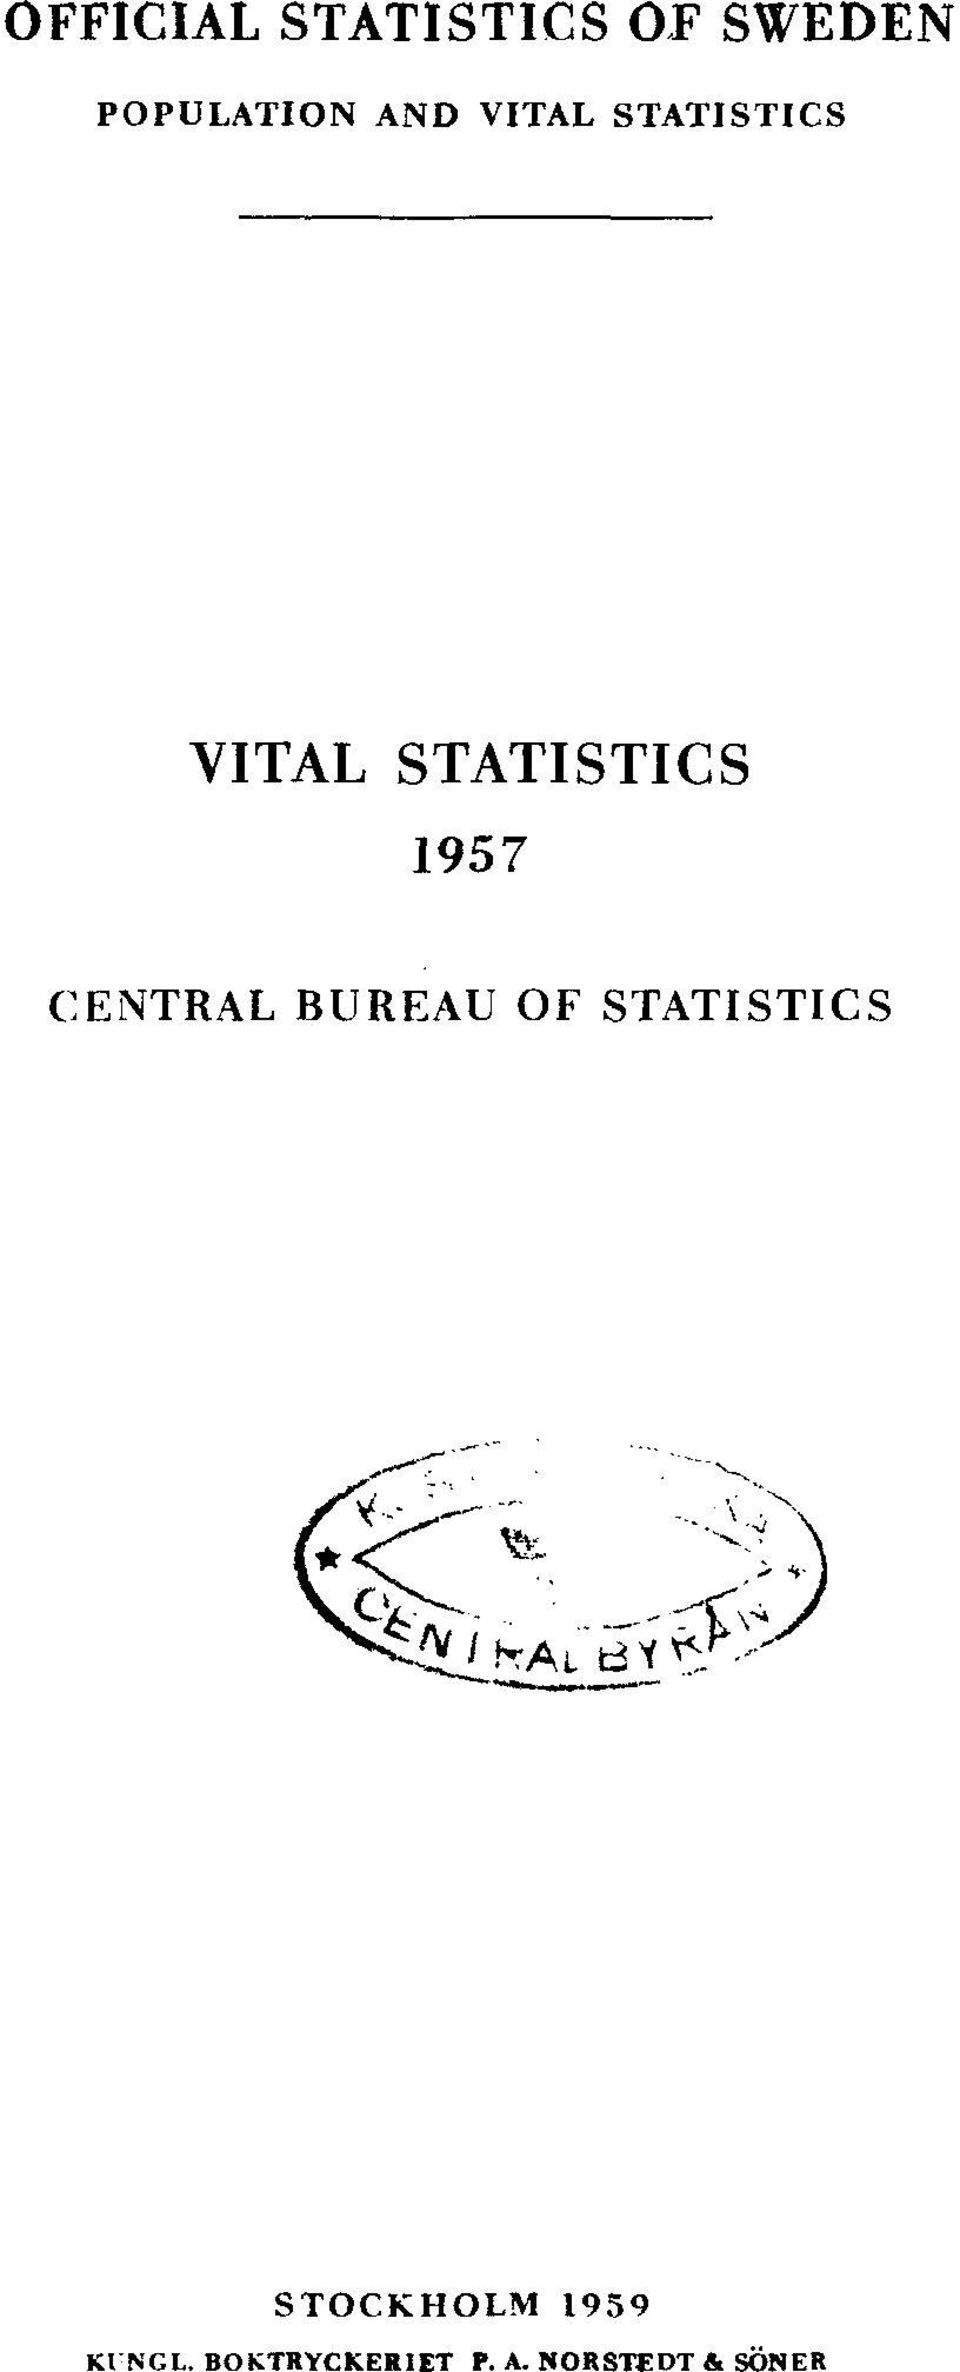 CENTRAL BUREAU OF STATISTICS STOCKHOLM